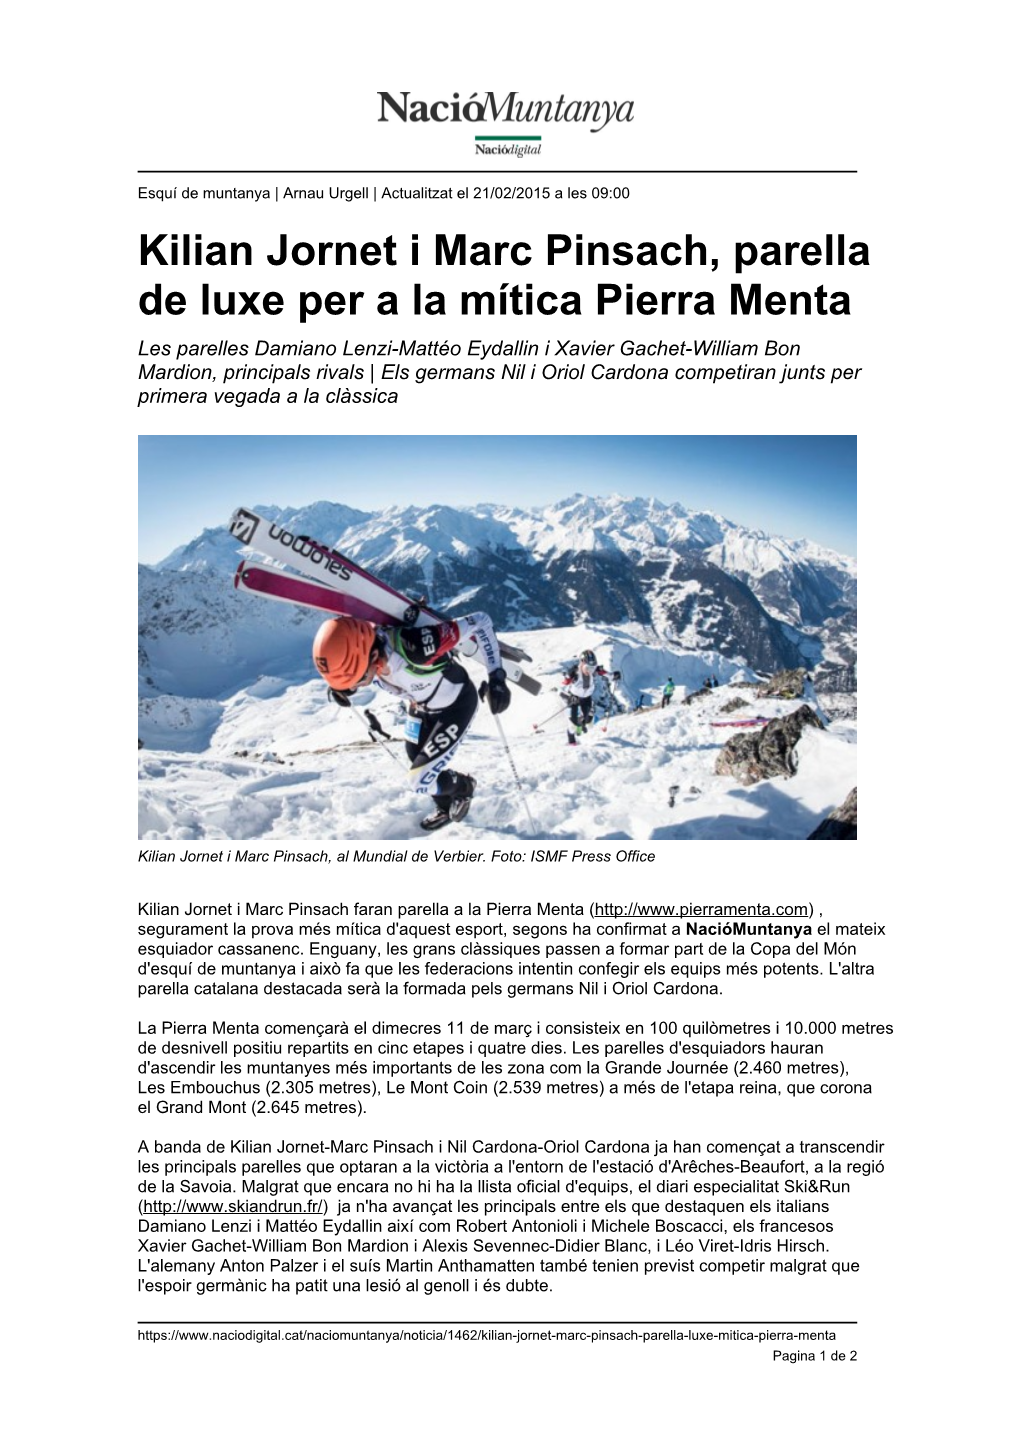 Kilian Jornet I Marc Pinsach, Parella De Luxe Per a La Mítica Pierra Menta